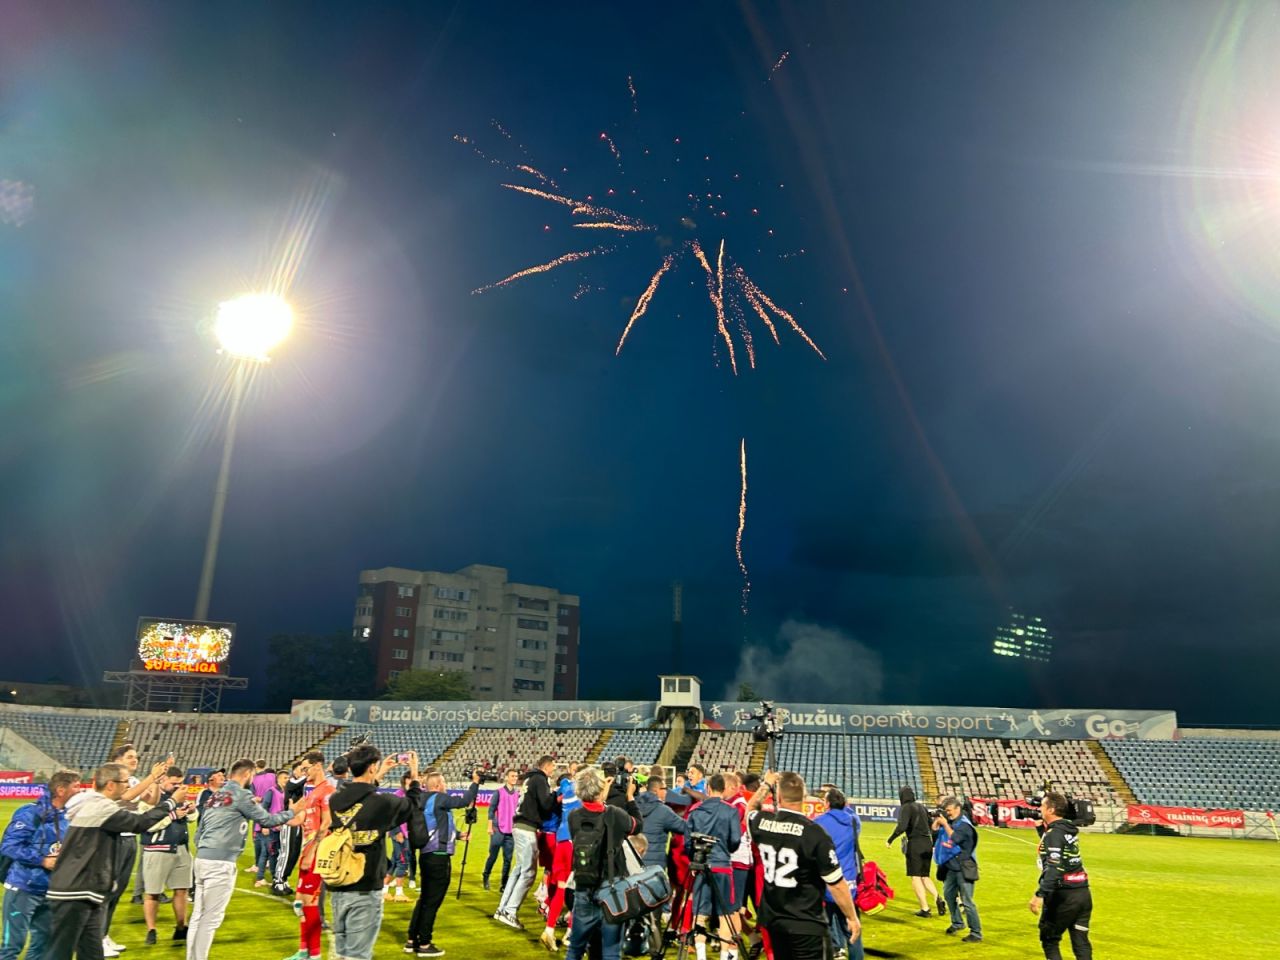 Sărbătoare la Buzău! Fotbaliștii s-au bucurat alături de fani în urma promovării istorice. Vali Dumitrache: ”Am muncit un an pentru asta”_34